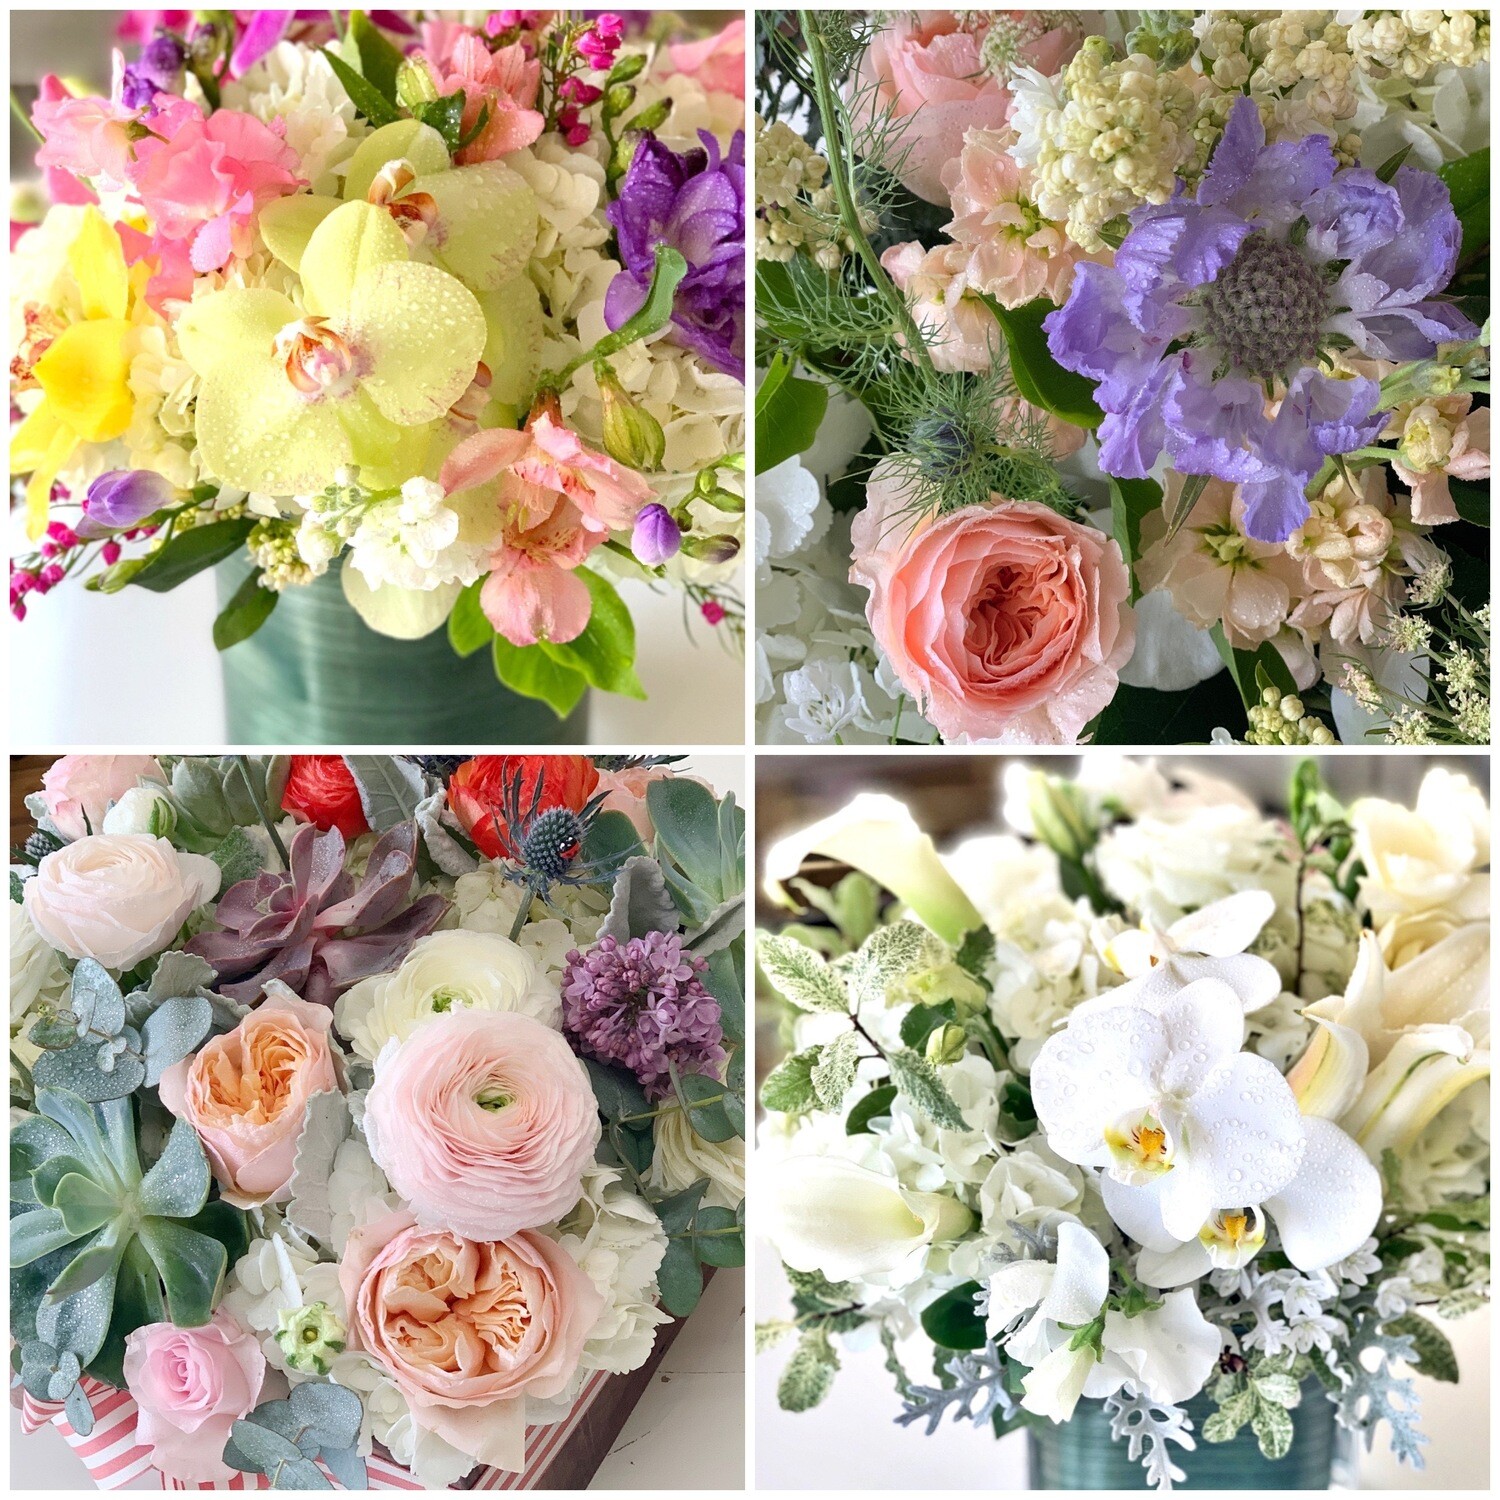 Monthly flower arrangement- 6 months